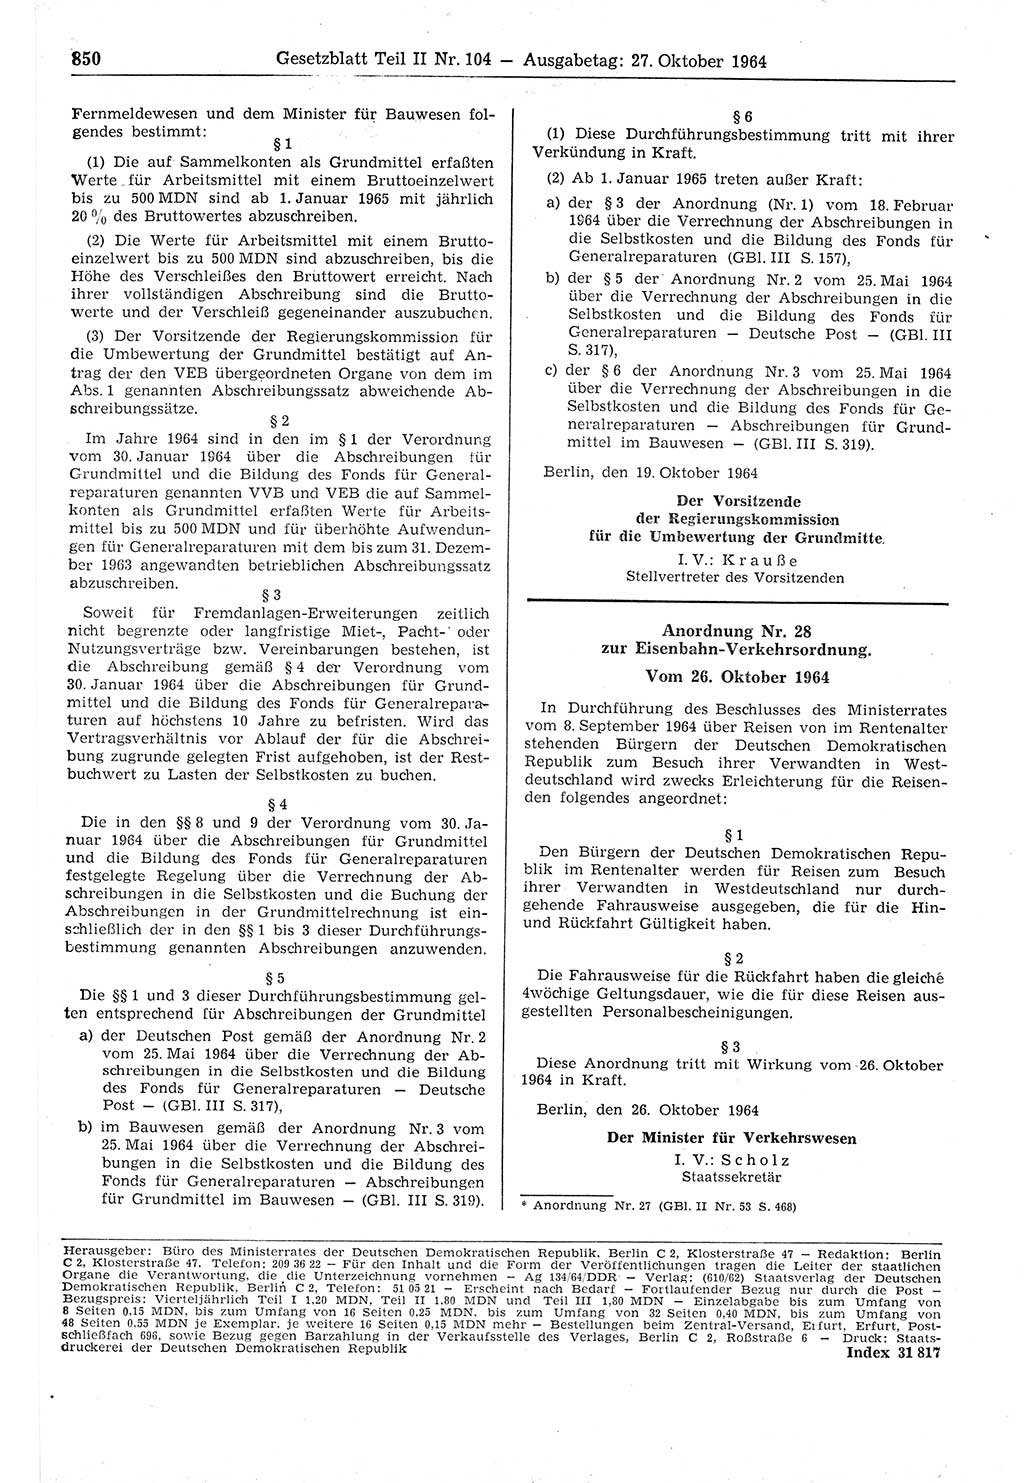 Gesetzblatt (GBl.) der Deutschen Demokratischen Republik (DDR) Teil ⅠⅠ 1964, Seite 850 (GBl. DDR ⅠⅠ 1964, S. 850)